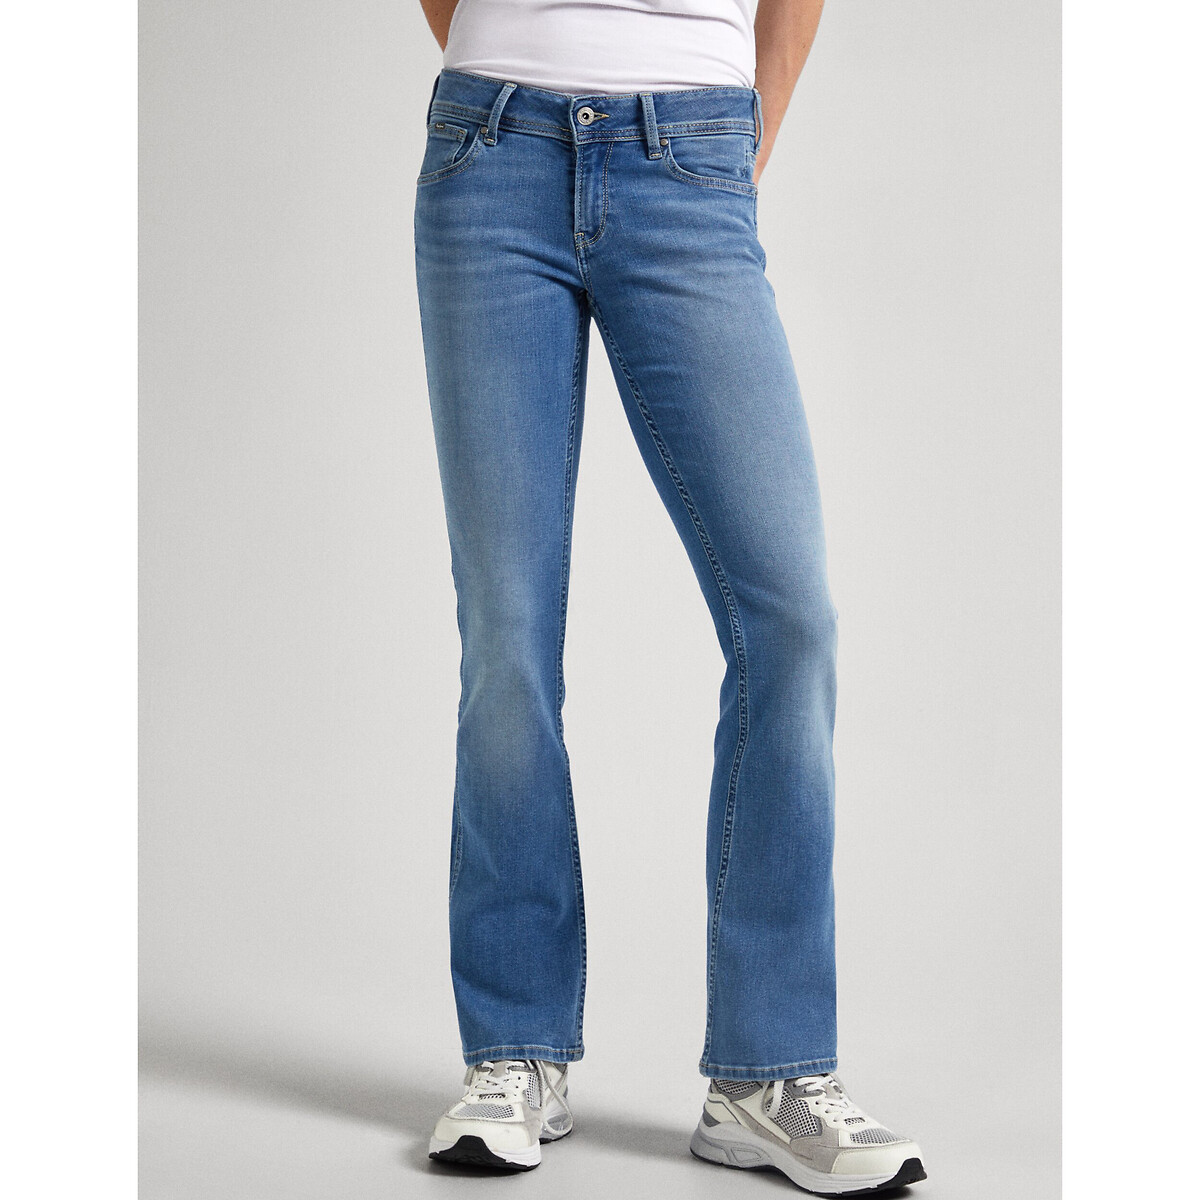 Джинсы расклешенные slim fit с низкой посадкой 28/30 синий джинсы узкие с низкой посадкой 30 30 синий